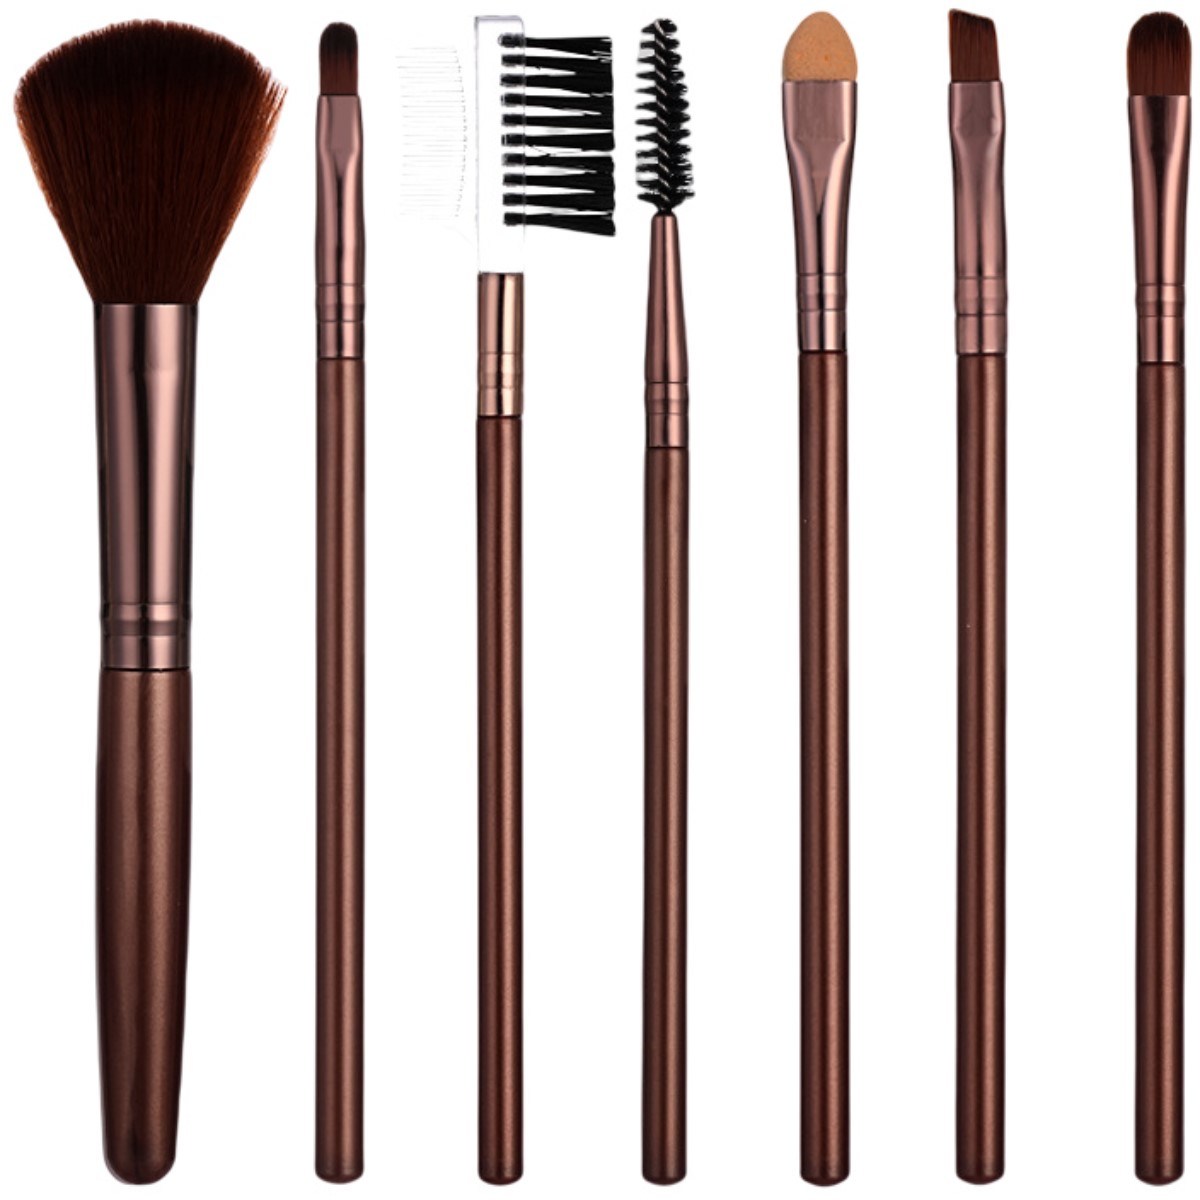 The 7-pack Makeup Brush Set Contains Blush Brush, Eyebrow Brush, Lip Brush, Eyeshadow Brush